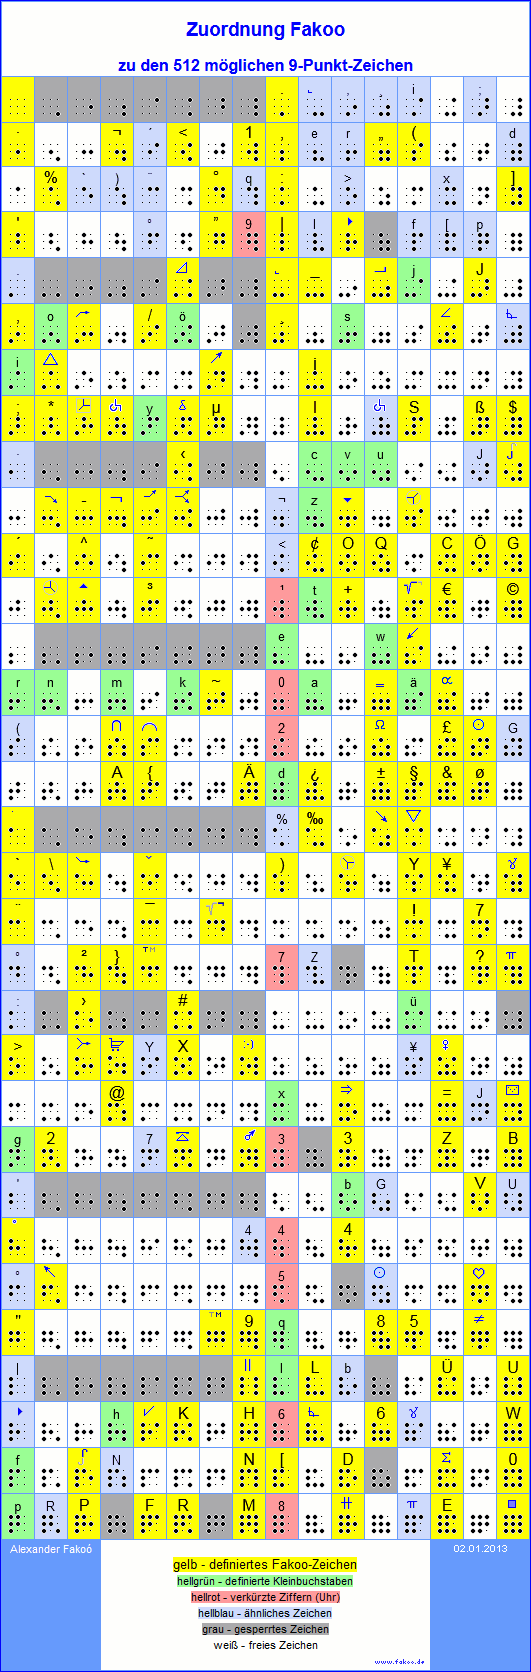 Zuordnung Fakoo zu den 512 möglichen 9-Punkt-Zeichen